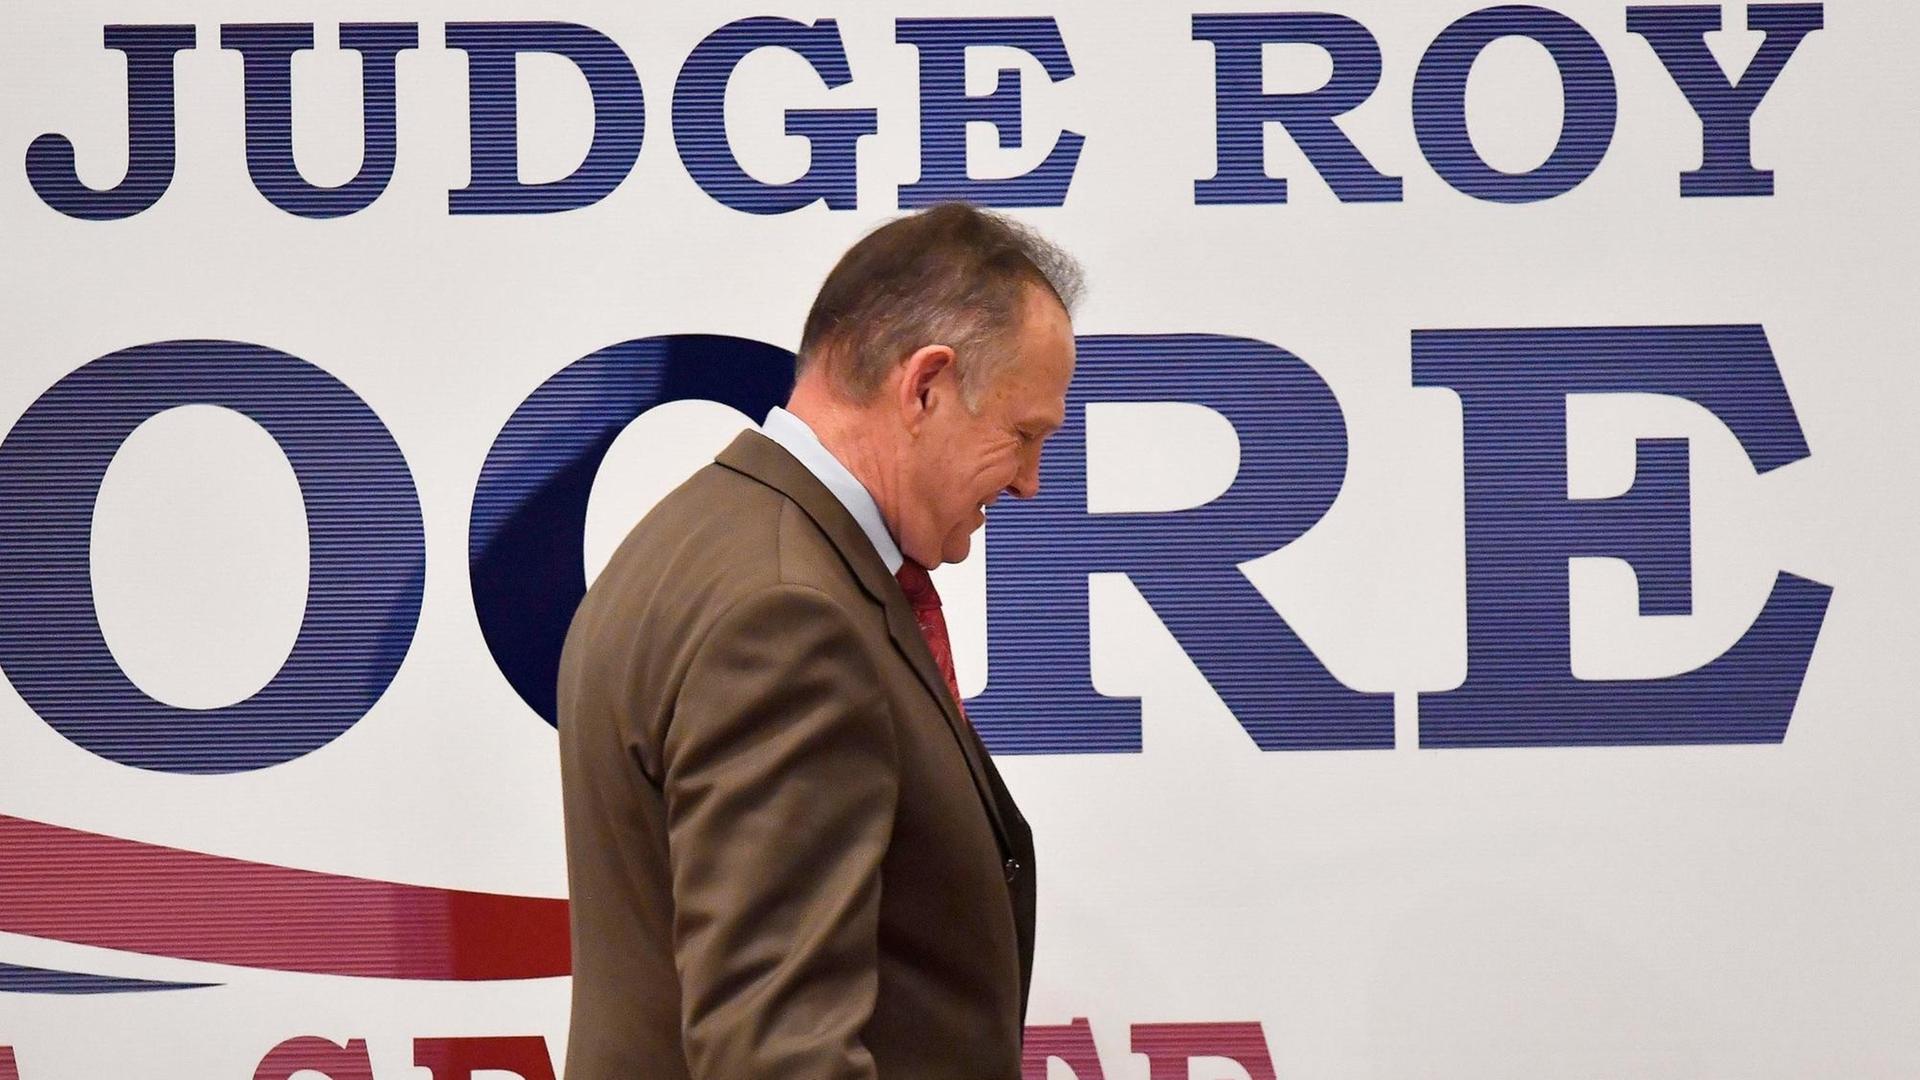 Moore verlässt nach einer Wahlkampfrede die Bühne